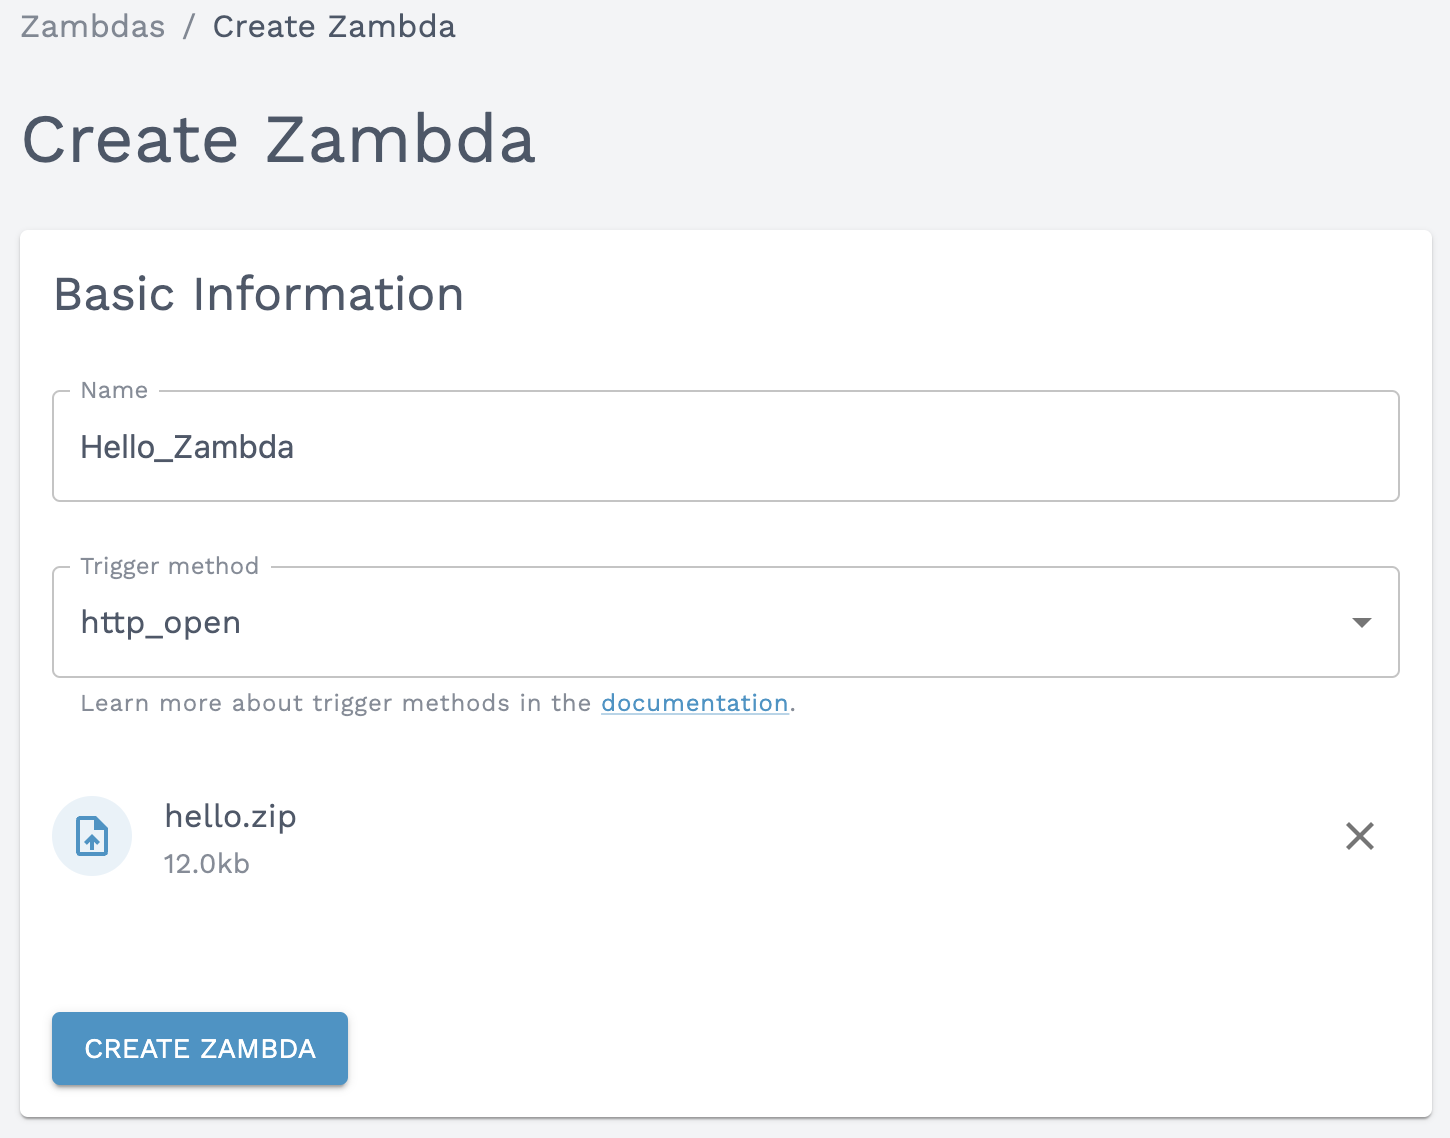 Create a Zambda